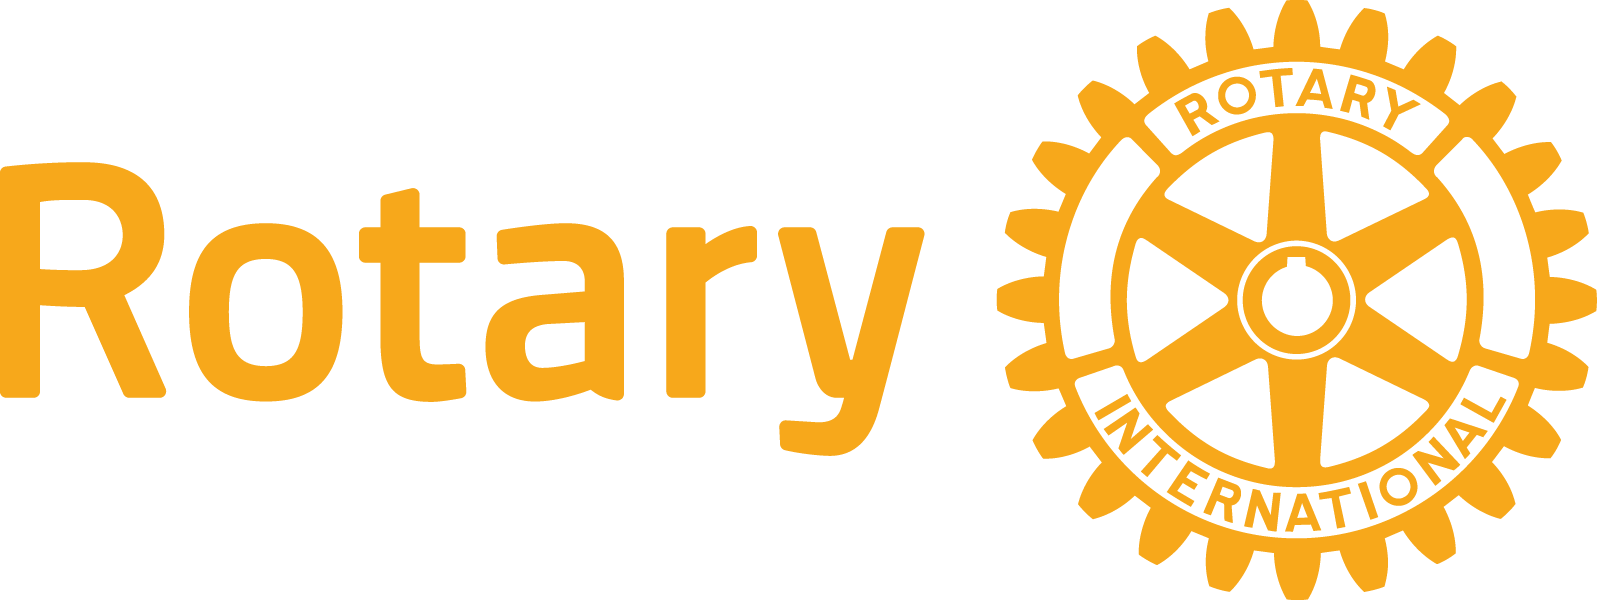 rotary international logo yellow